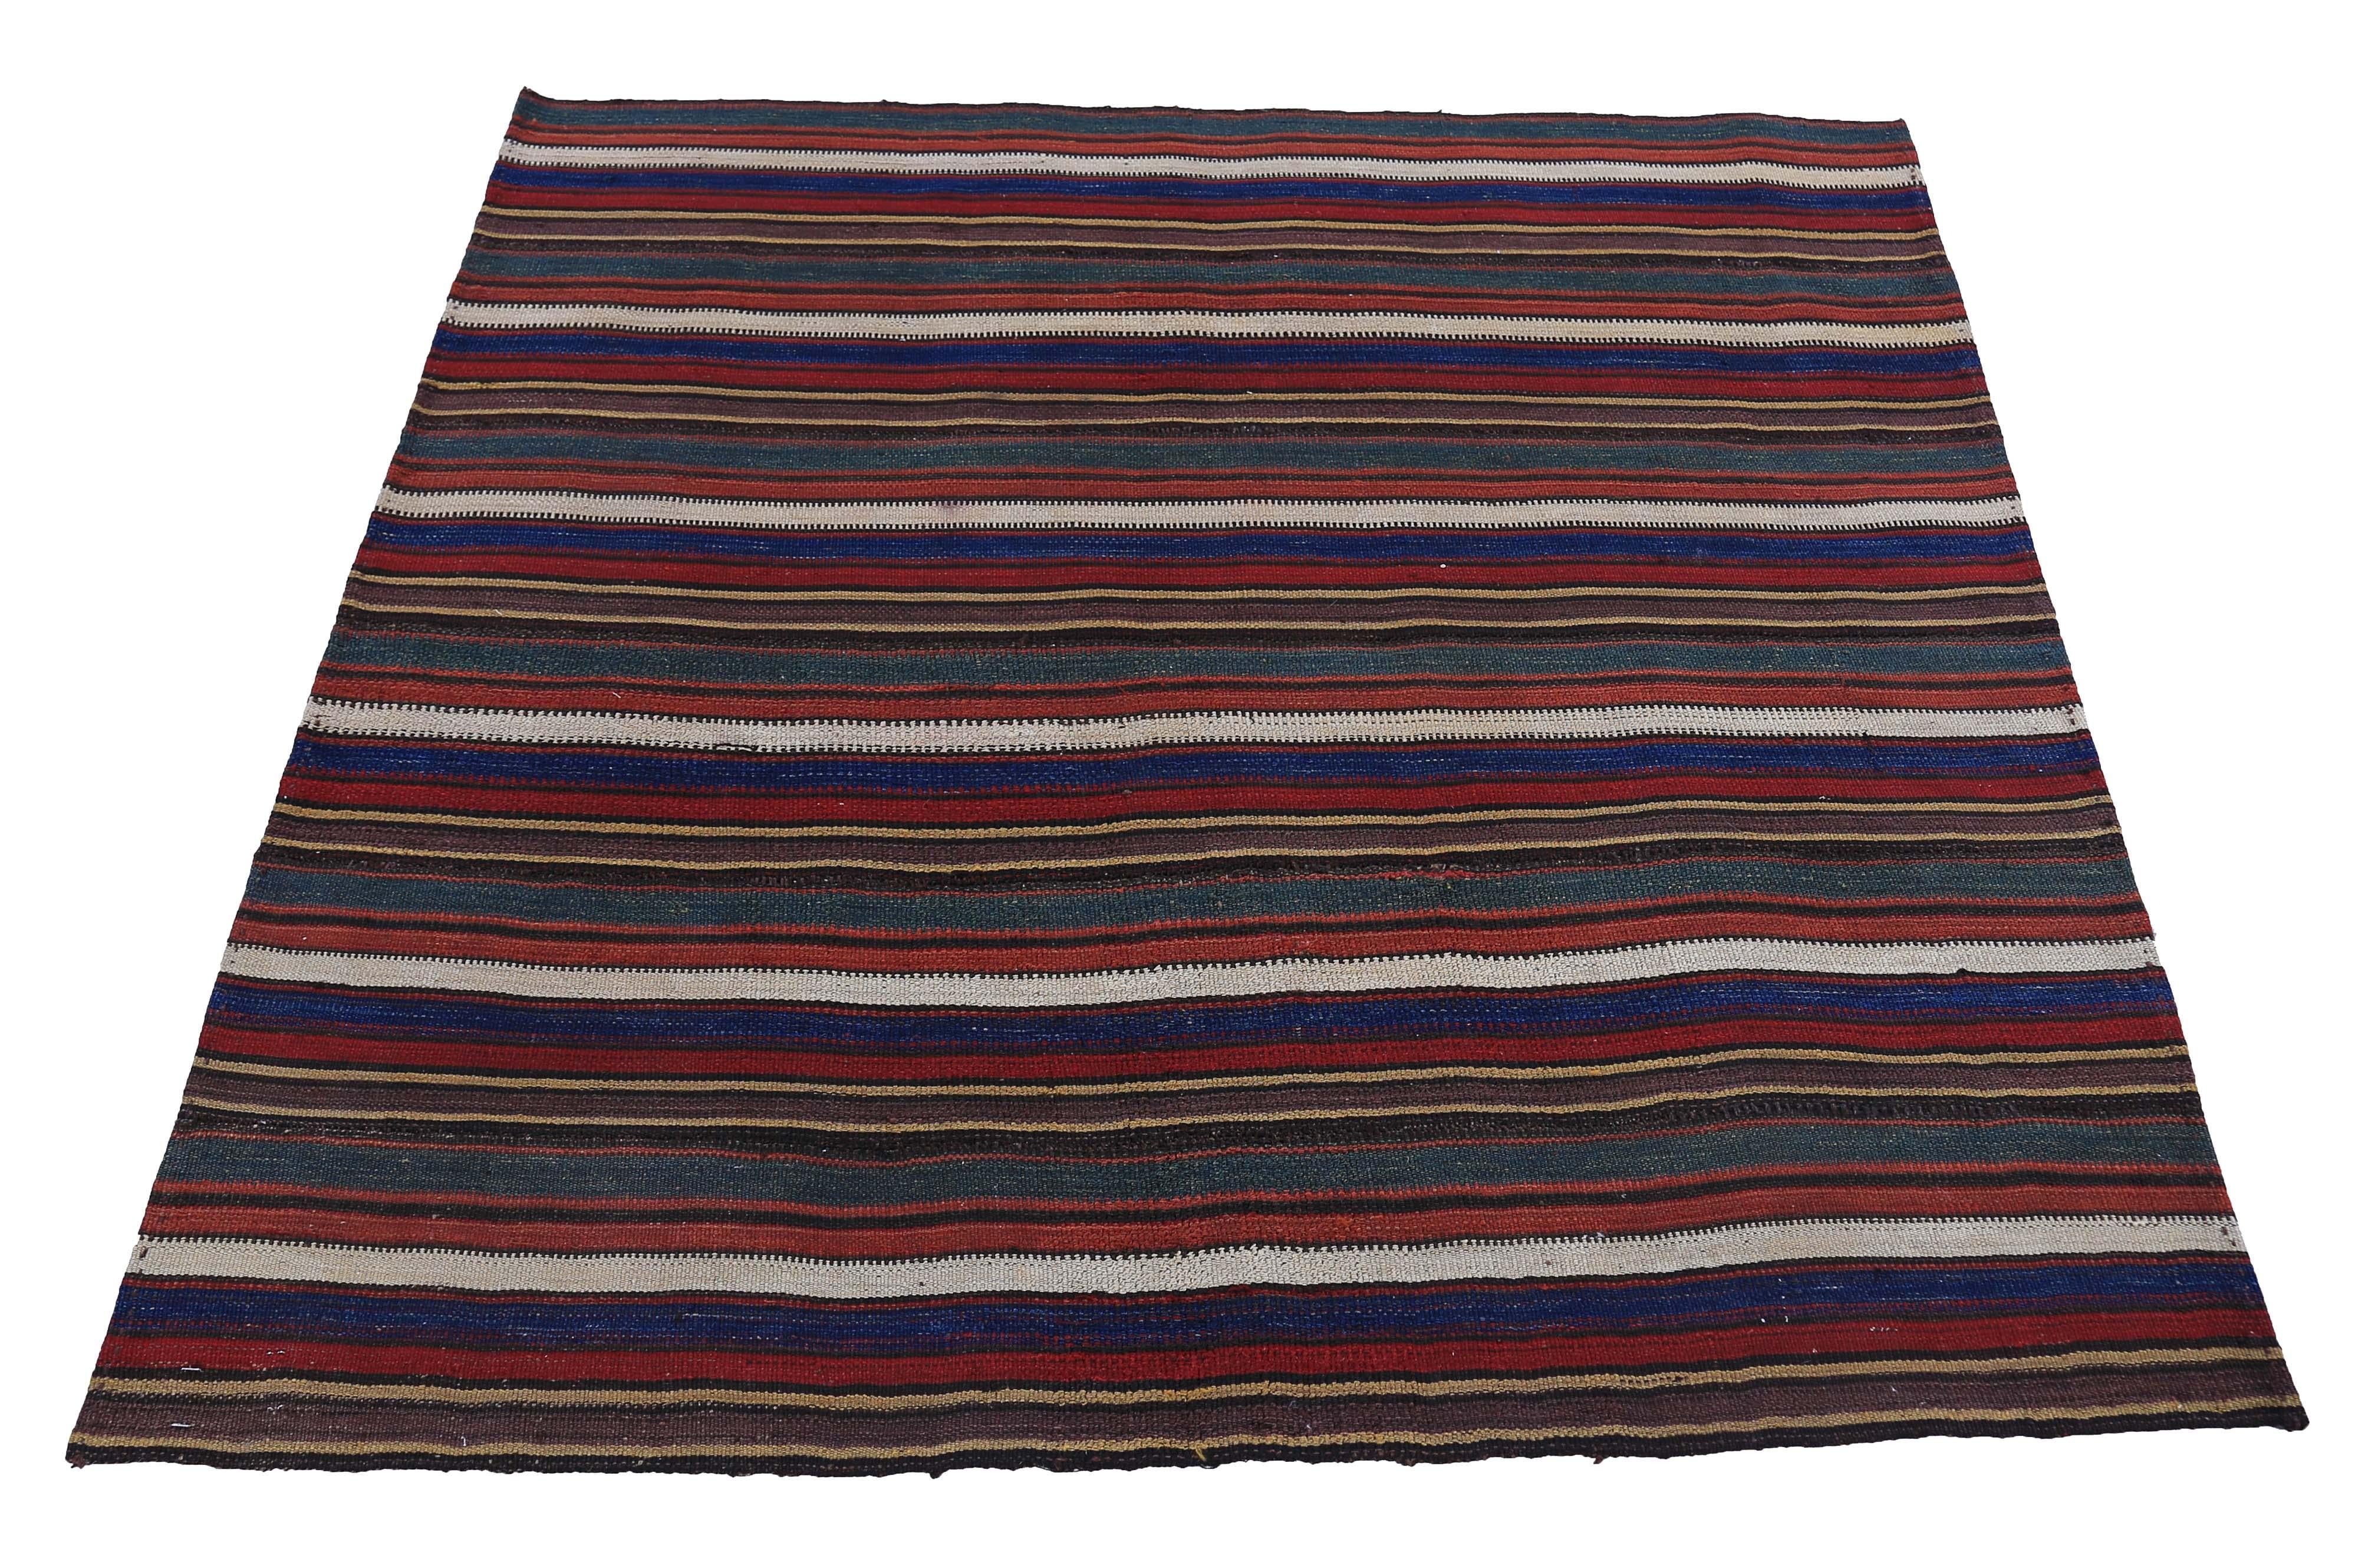 Moderner türkischer Teppich, handgewebt aus feinster Schafwolle und gefärbt mit natürlichen Pflanzenfarben, die für Menschen und Haustiere sicher sind. Es handelt sich um ein traditionelles Kelim-Flachgewebemuster mit roten, blauen und beigen